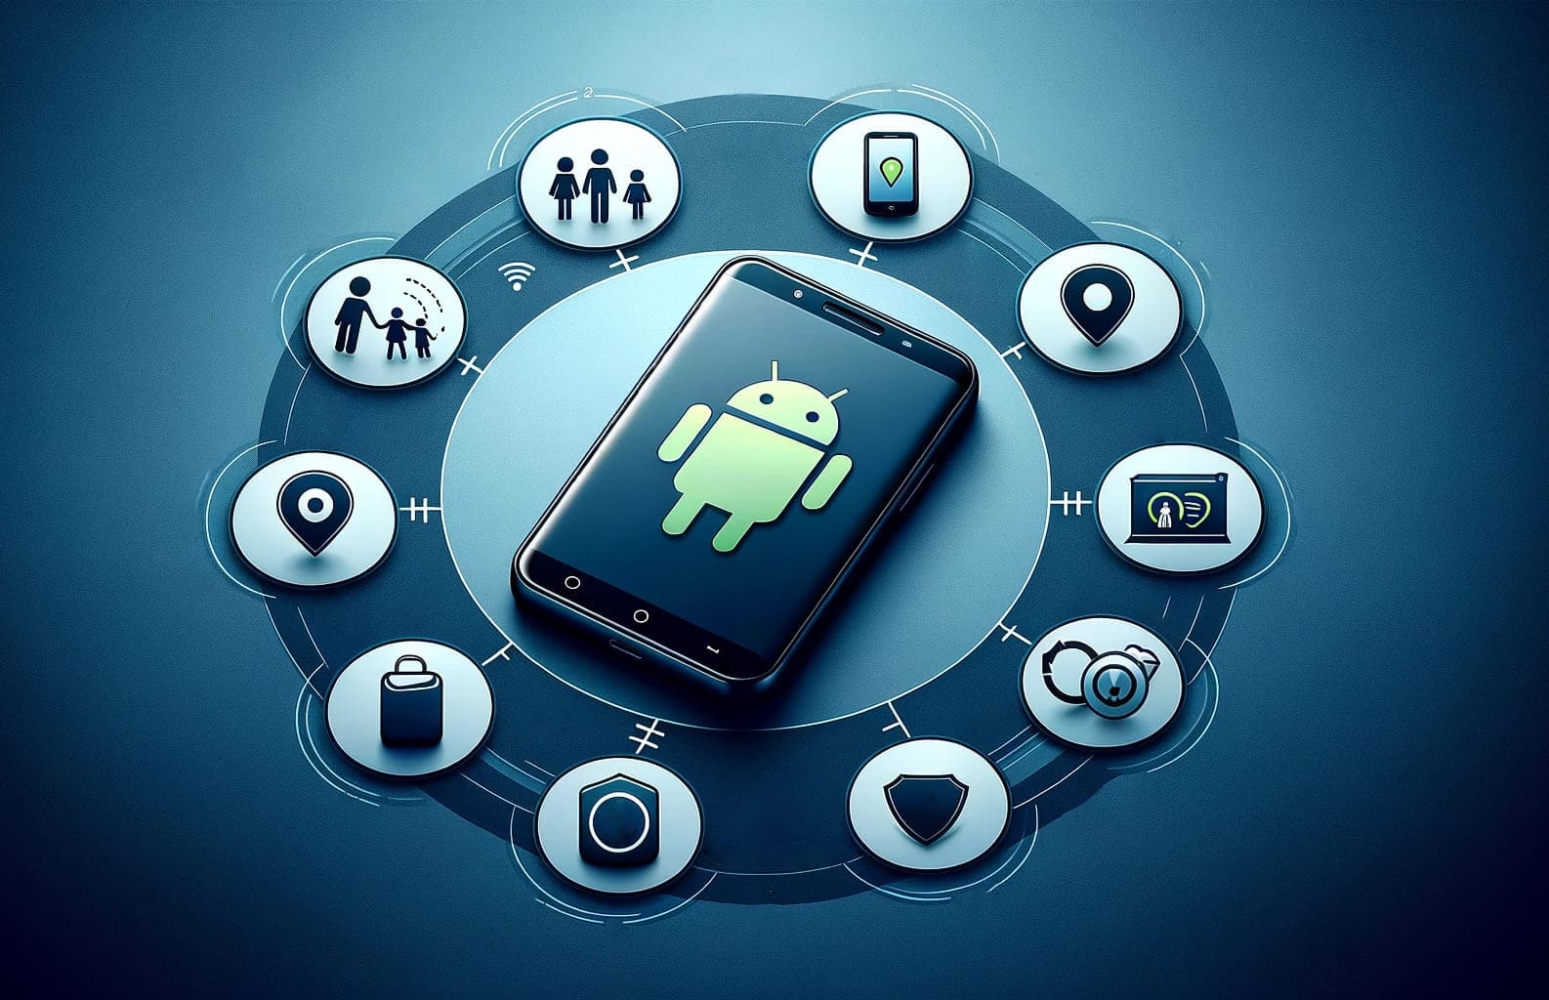 Handy auf Android-Bildschirm mit Symbolen um ihn herum auf einem dunkelblauen Hintergrund mit einem Kreis von Symbolen um ihn herum, die Kamera, Handy, Familie, Wireframe-Diagramm, objektive abstrakte umfasst